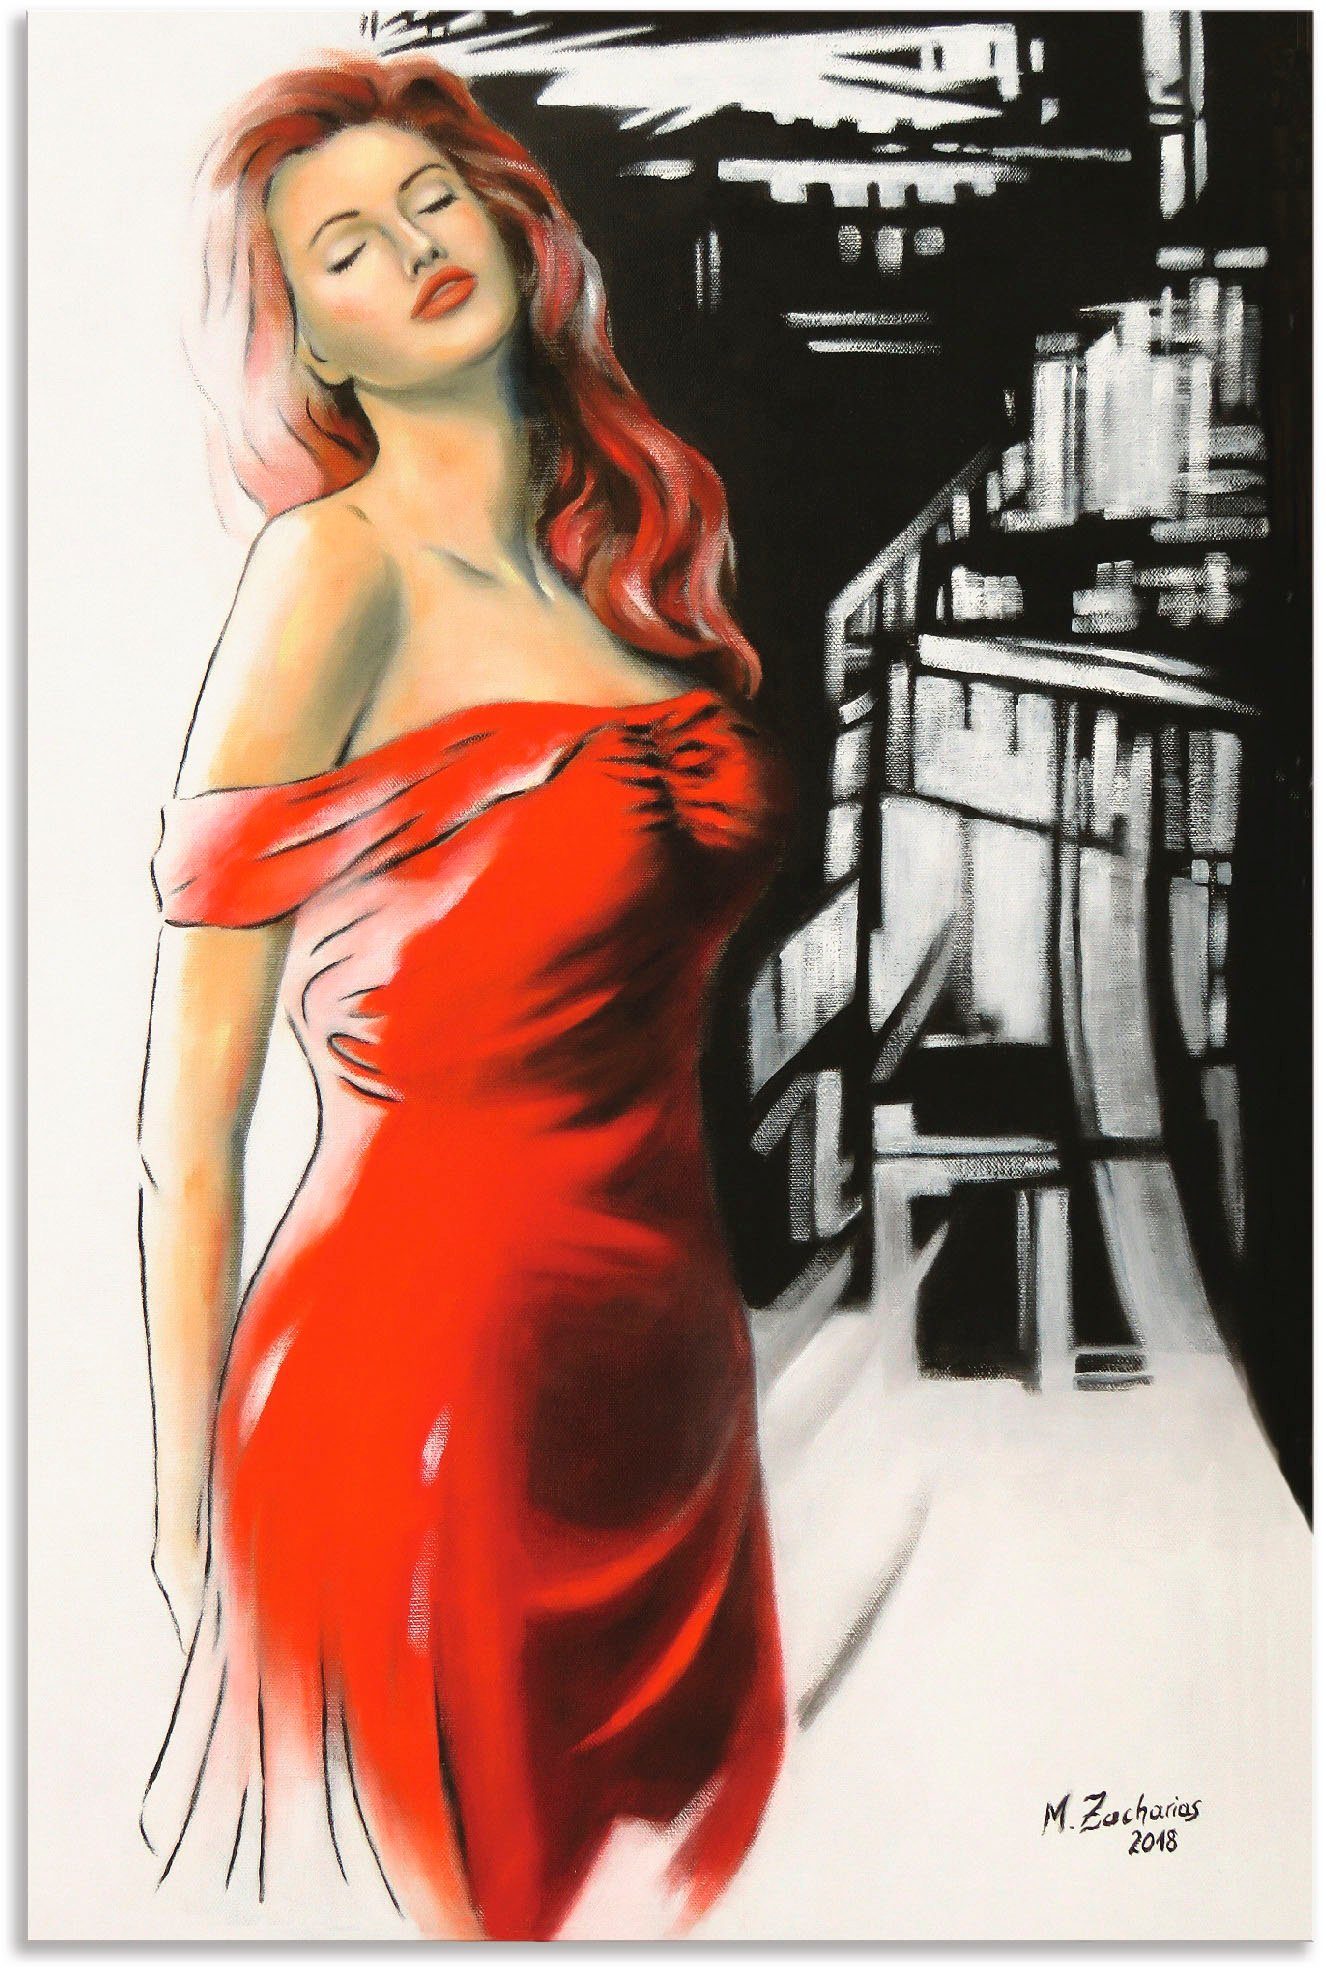 Artland Artprint Schoonheid in rode jurk in vele afmetingen & productsoorten - artprint van aluminium / artprint voor buiten, artprint op linnen, poster, muursticker / wandfolie oo